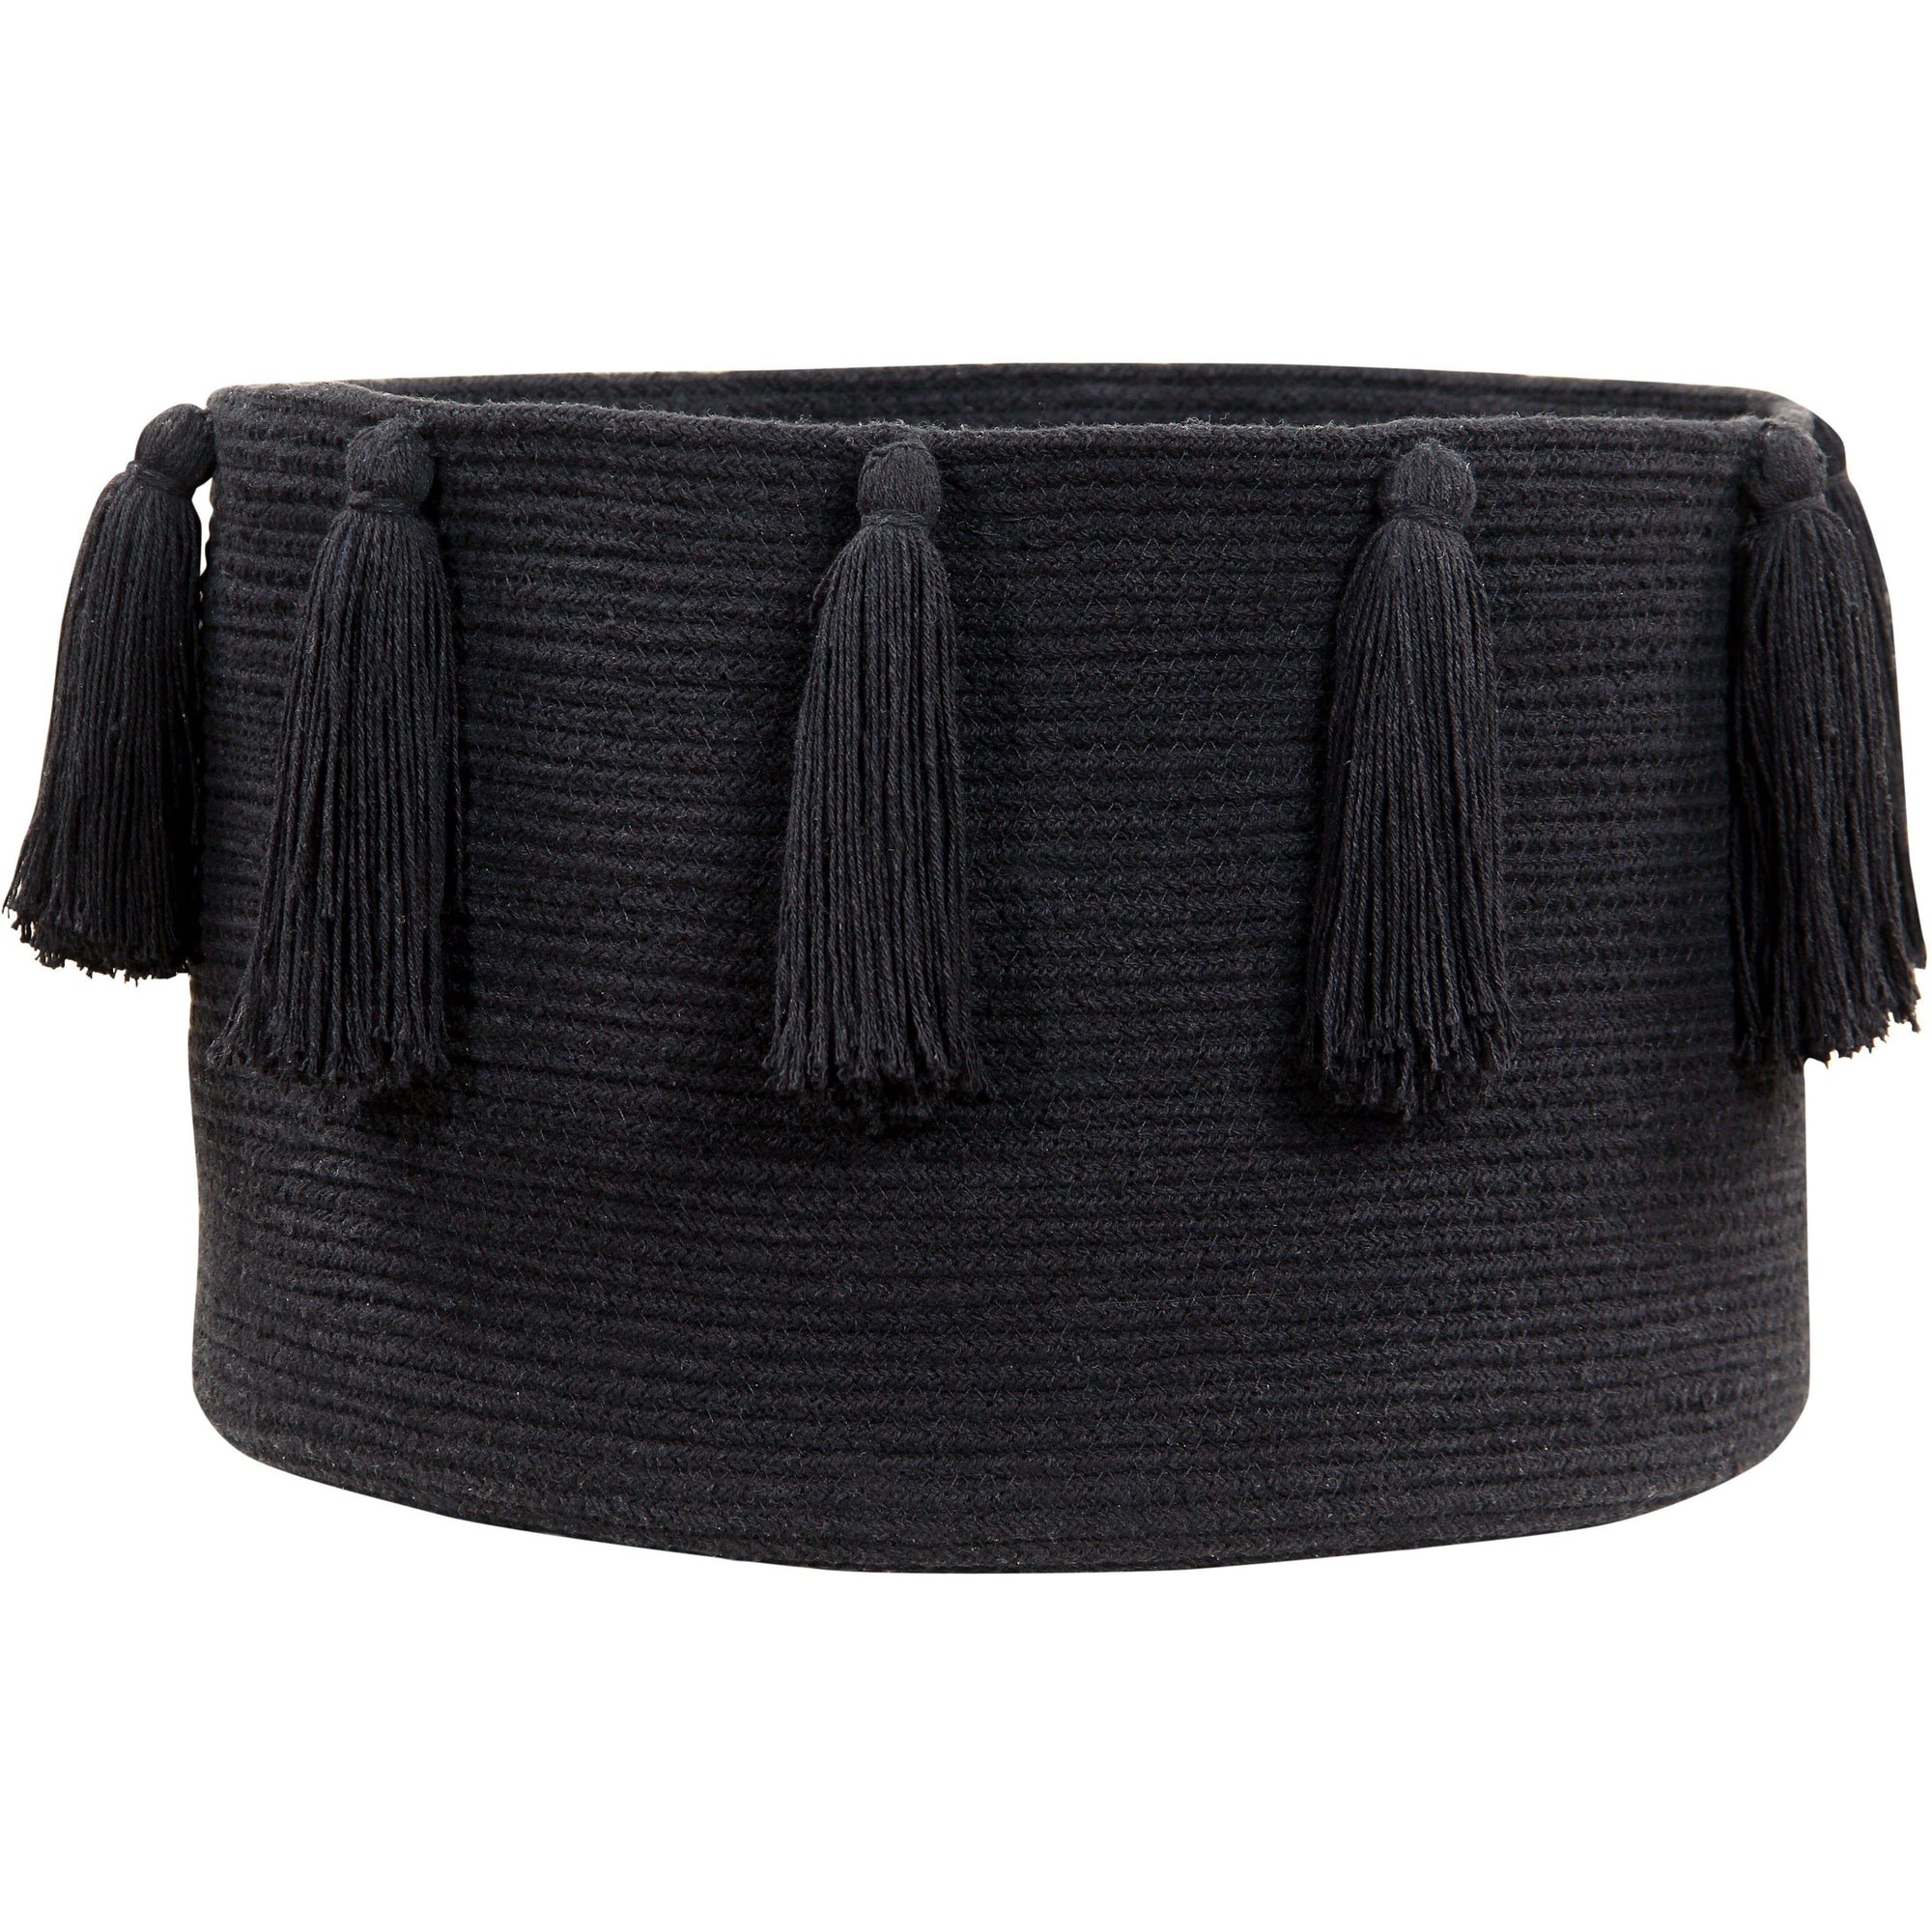 Rugs by Roo | Lorena Canals Tassels Black Basket-BSK-TAS-BK